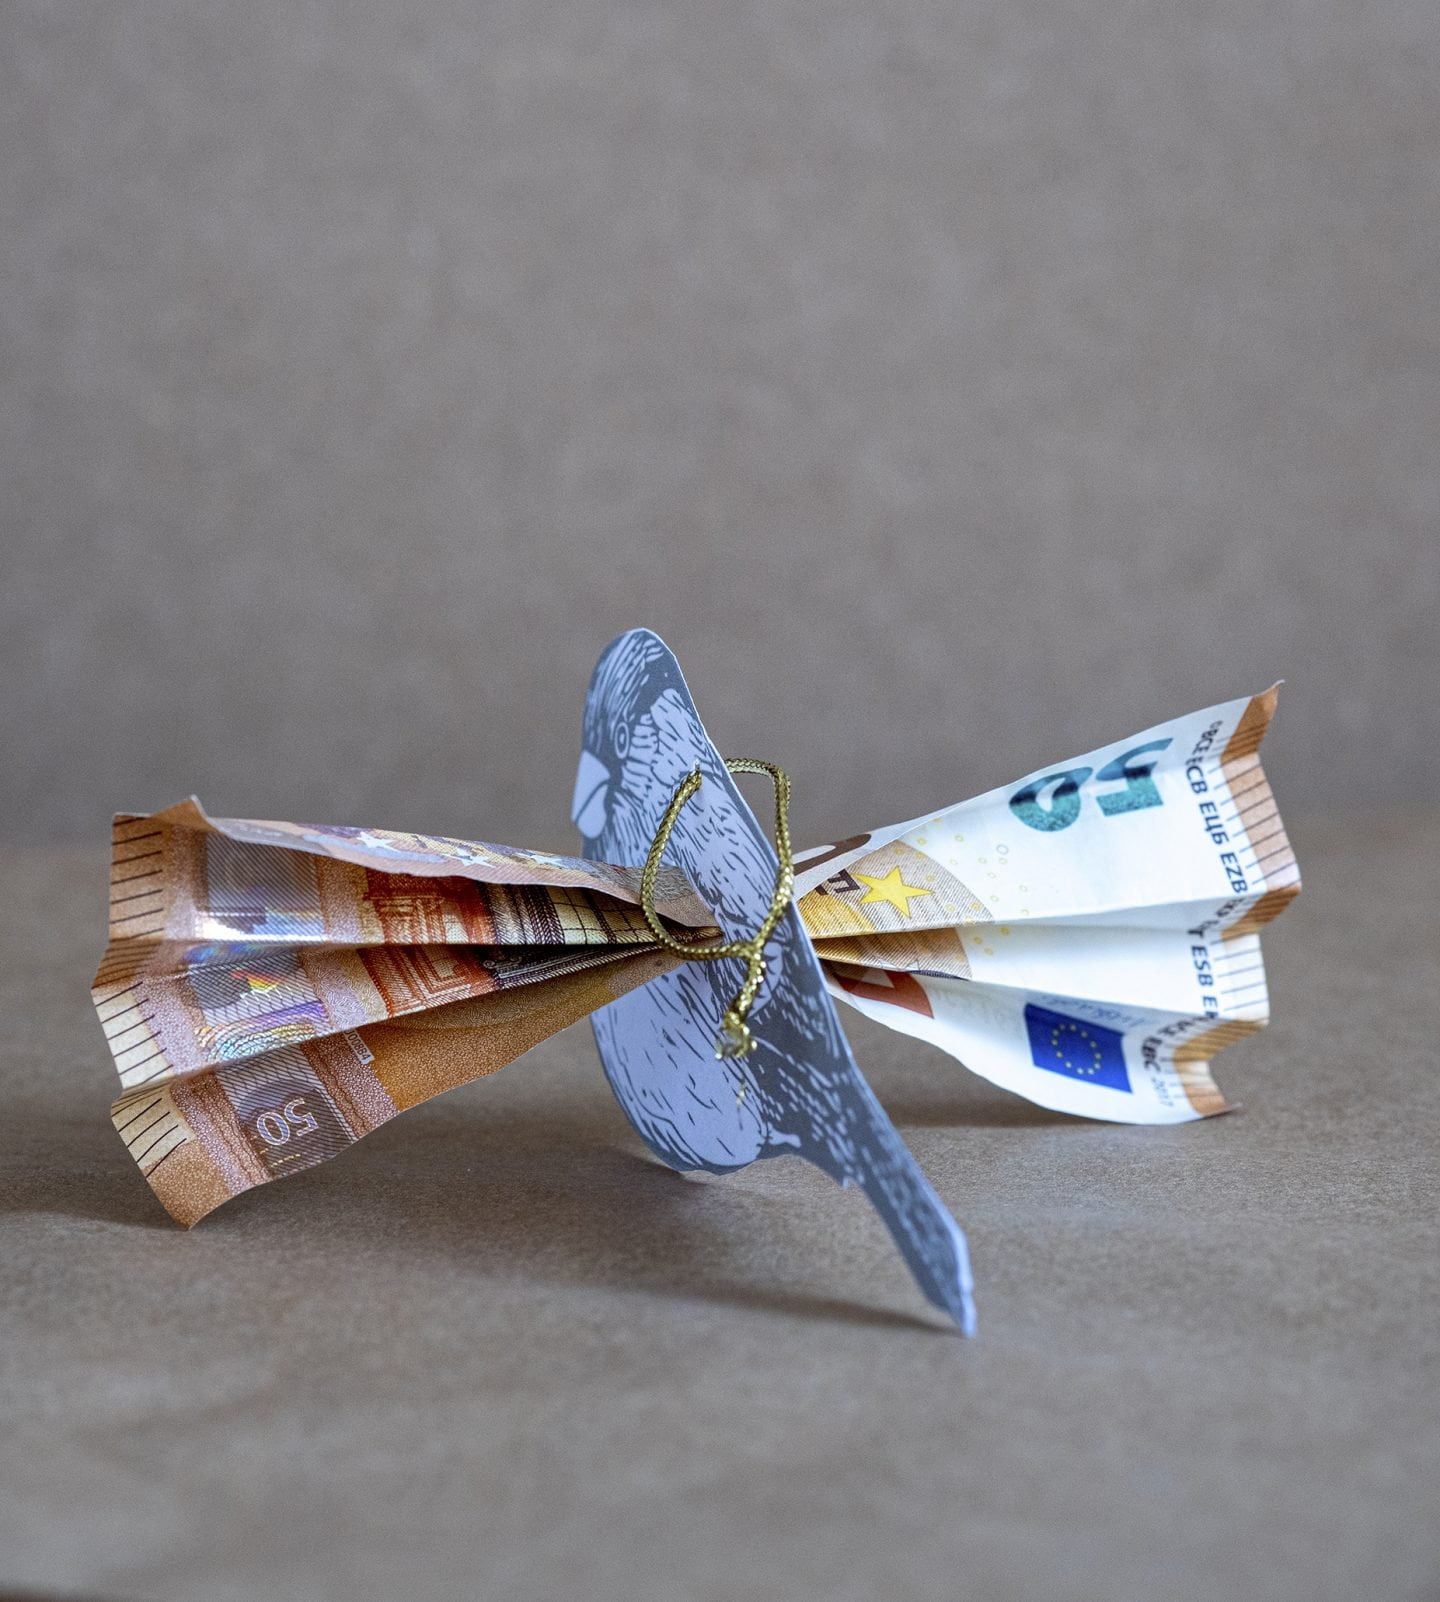 Geld als cadeau voor Bruiloft en verjaardag - Diy – ElsaRblog